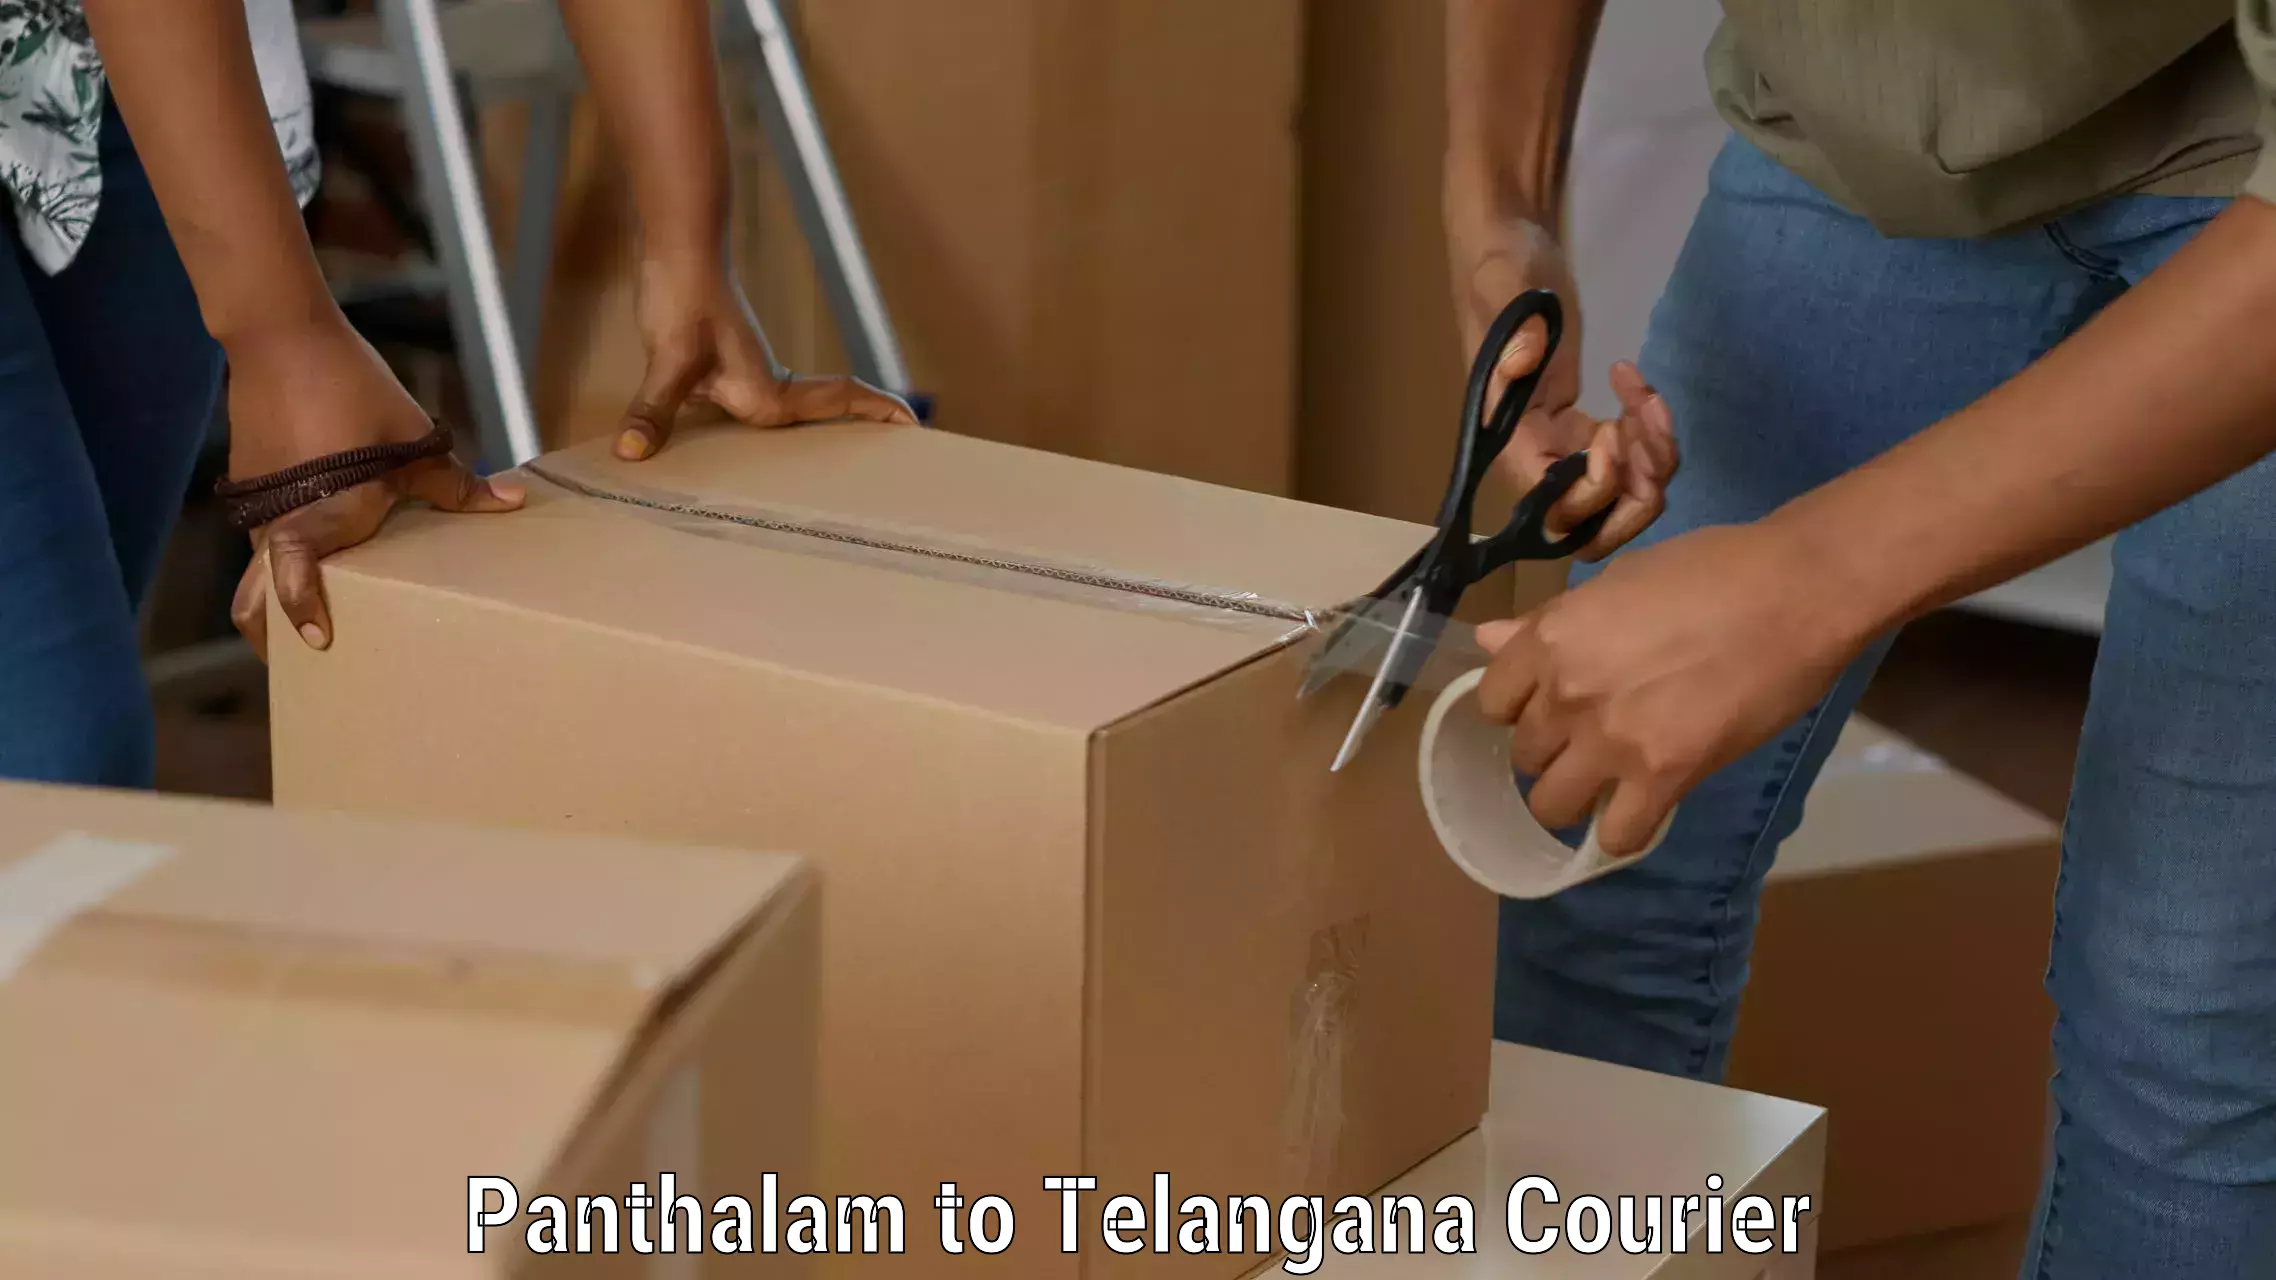 Courier service comparison Panthalam to Gadwal